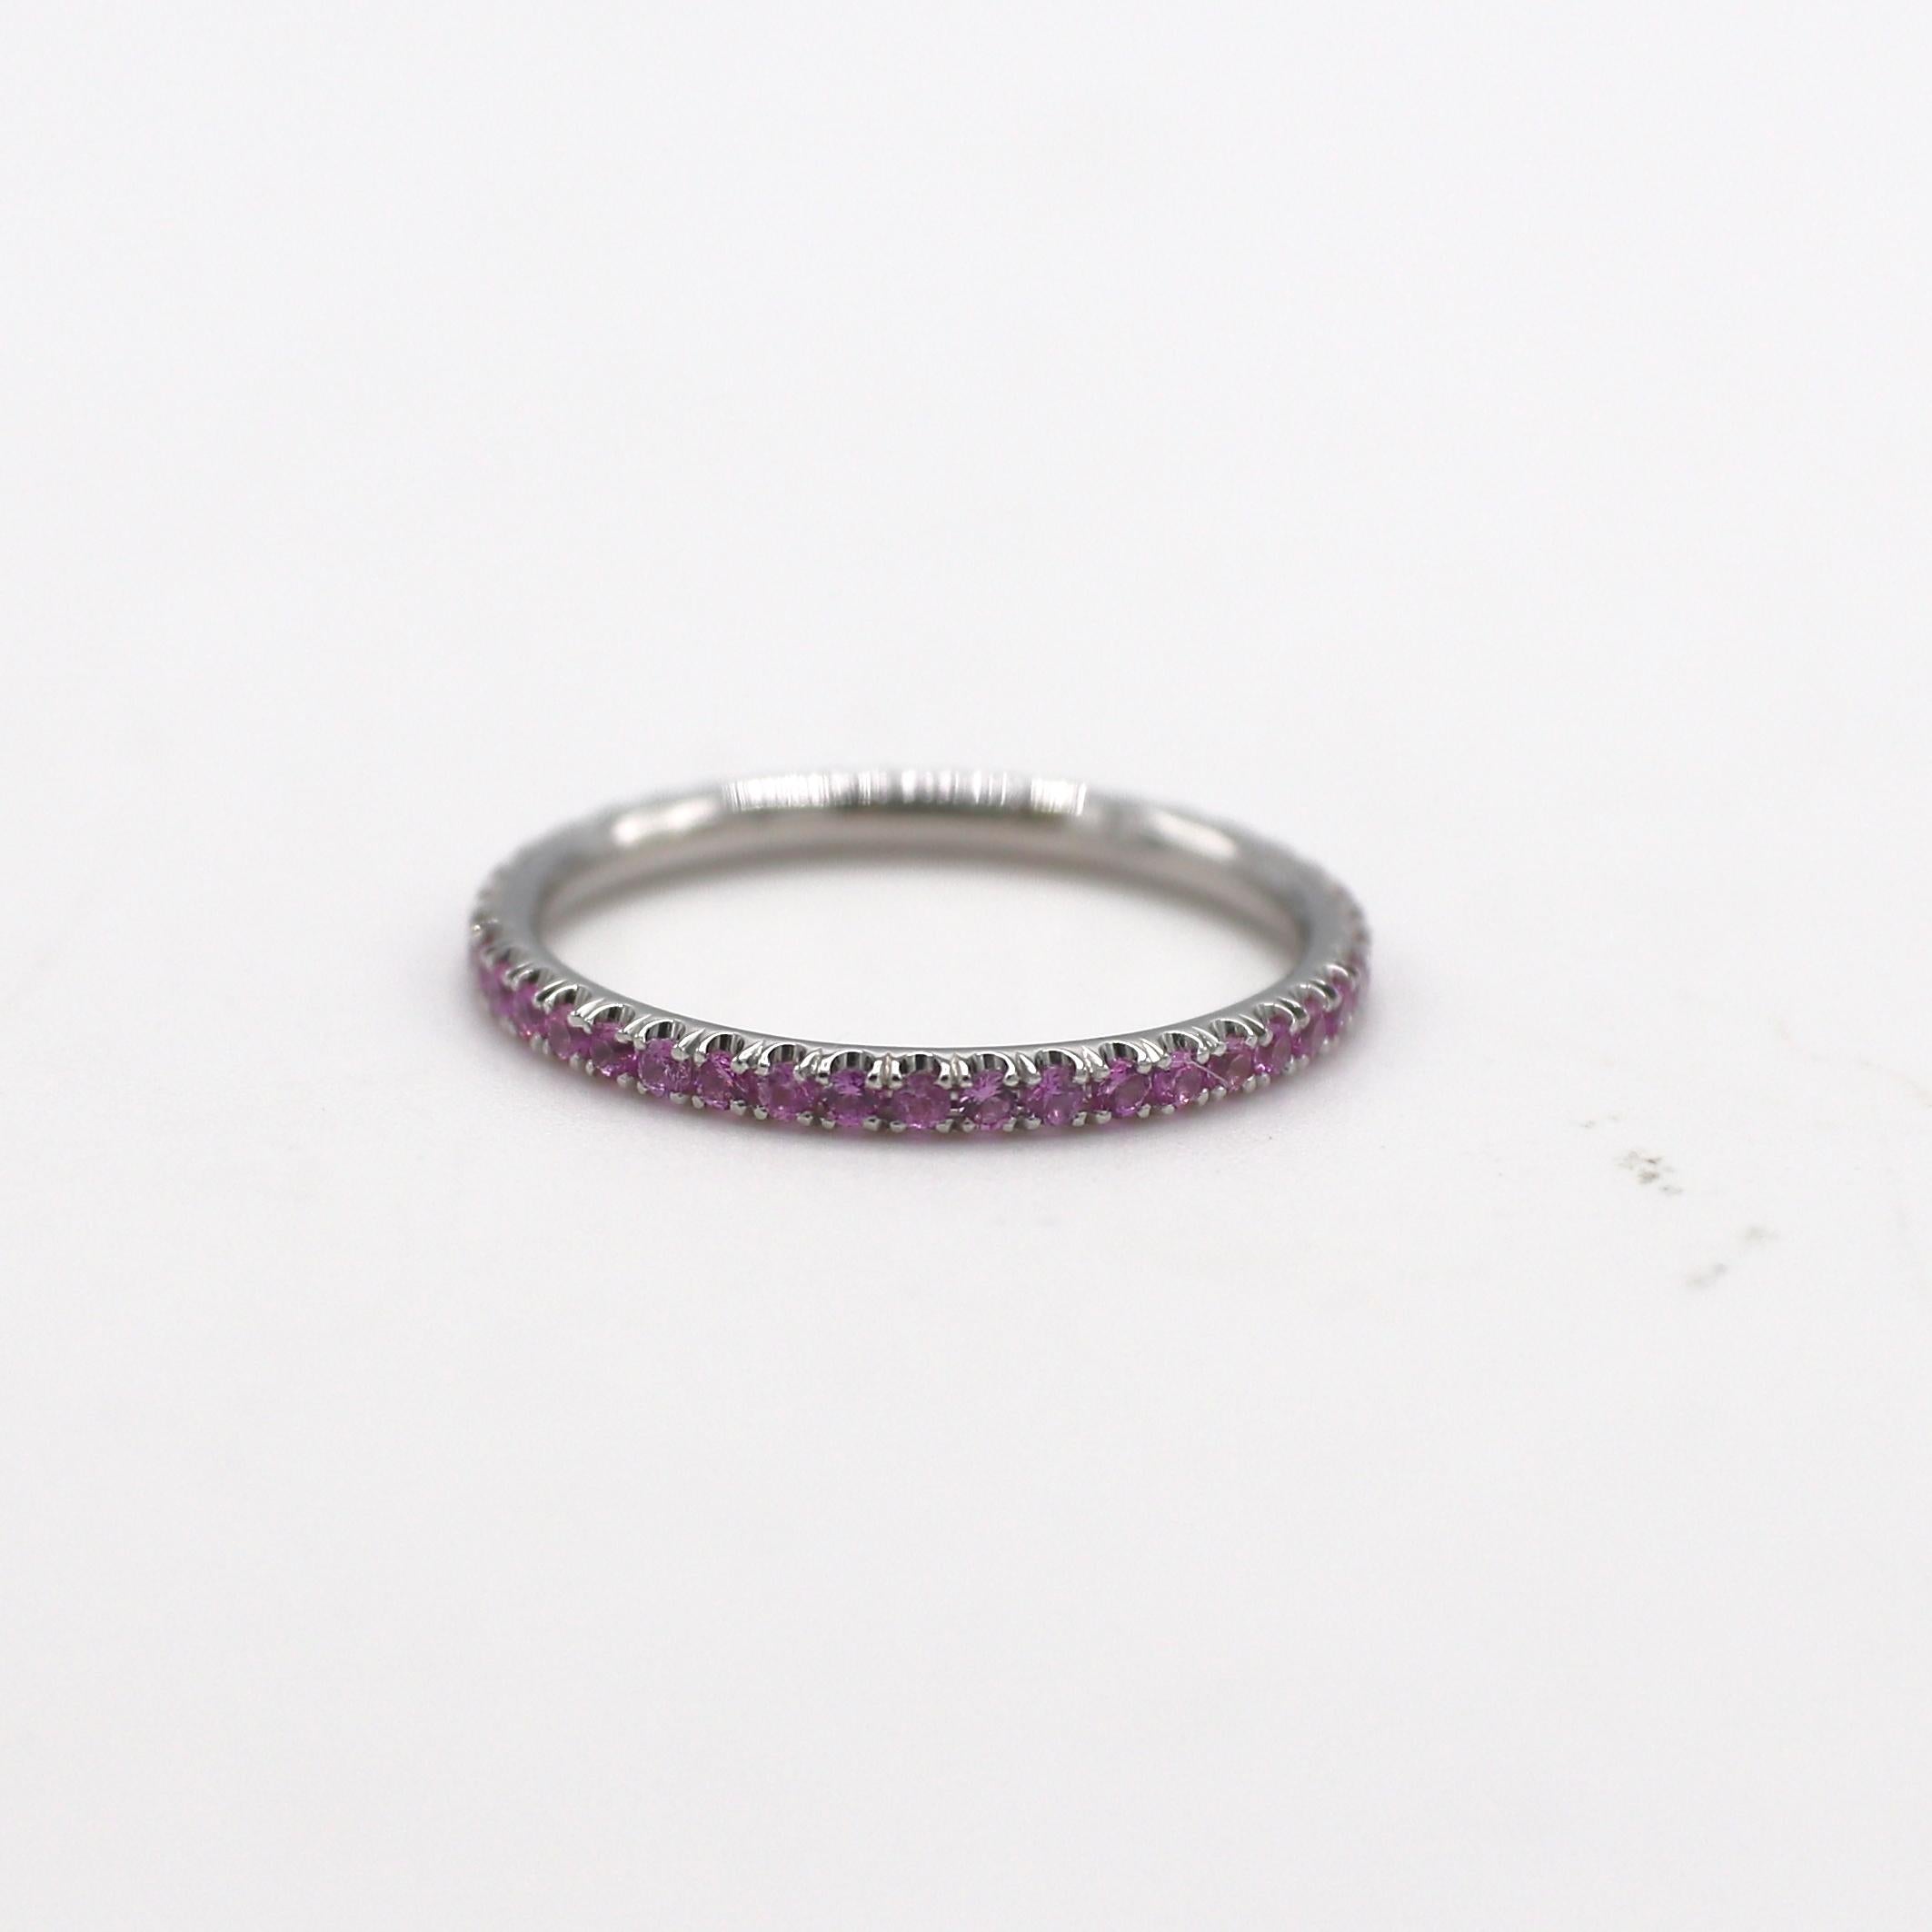 Eternity-Ring aus 18 Karat Weißgold mit rosa Saphir 
Metall: 18 Karat Weißgold
Gewicht: 1.55 Gramm
Größe: 7 (US)
Breite: 1.7 mm
